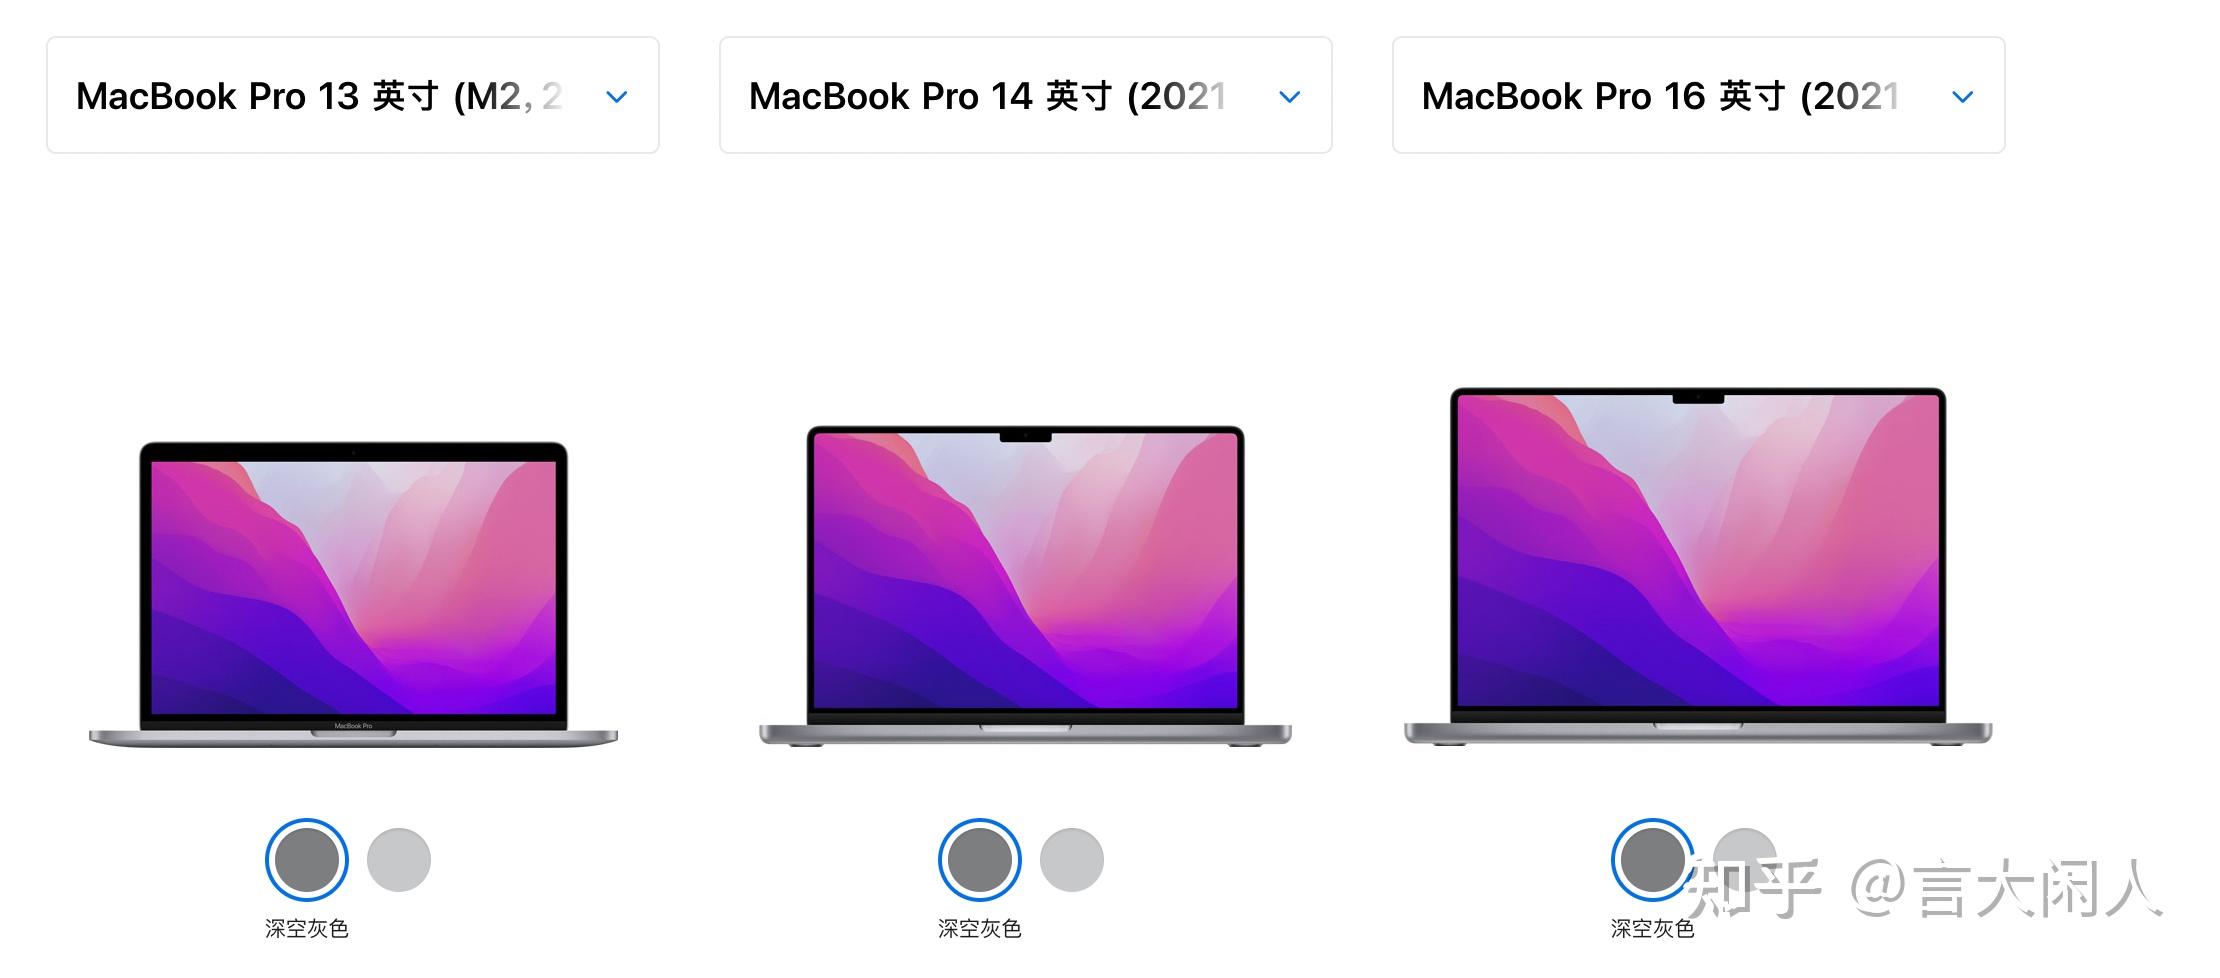 闪亮的玫瑰金！苹果12寸全新MacBook完全拆解-苹果,12寸,MacBook,笔记本,玫瑰金,拆解,iFixit ——快科技(驱动之家旗下 ...